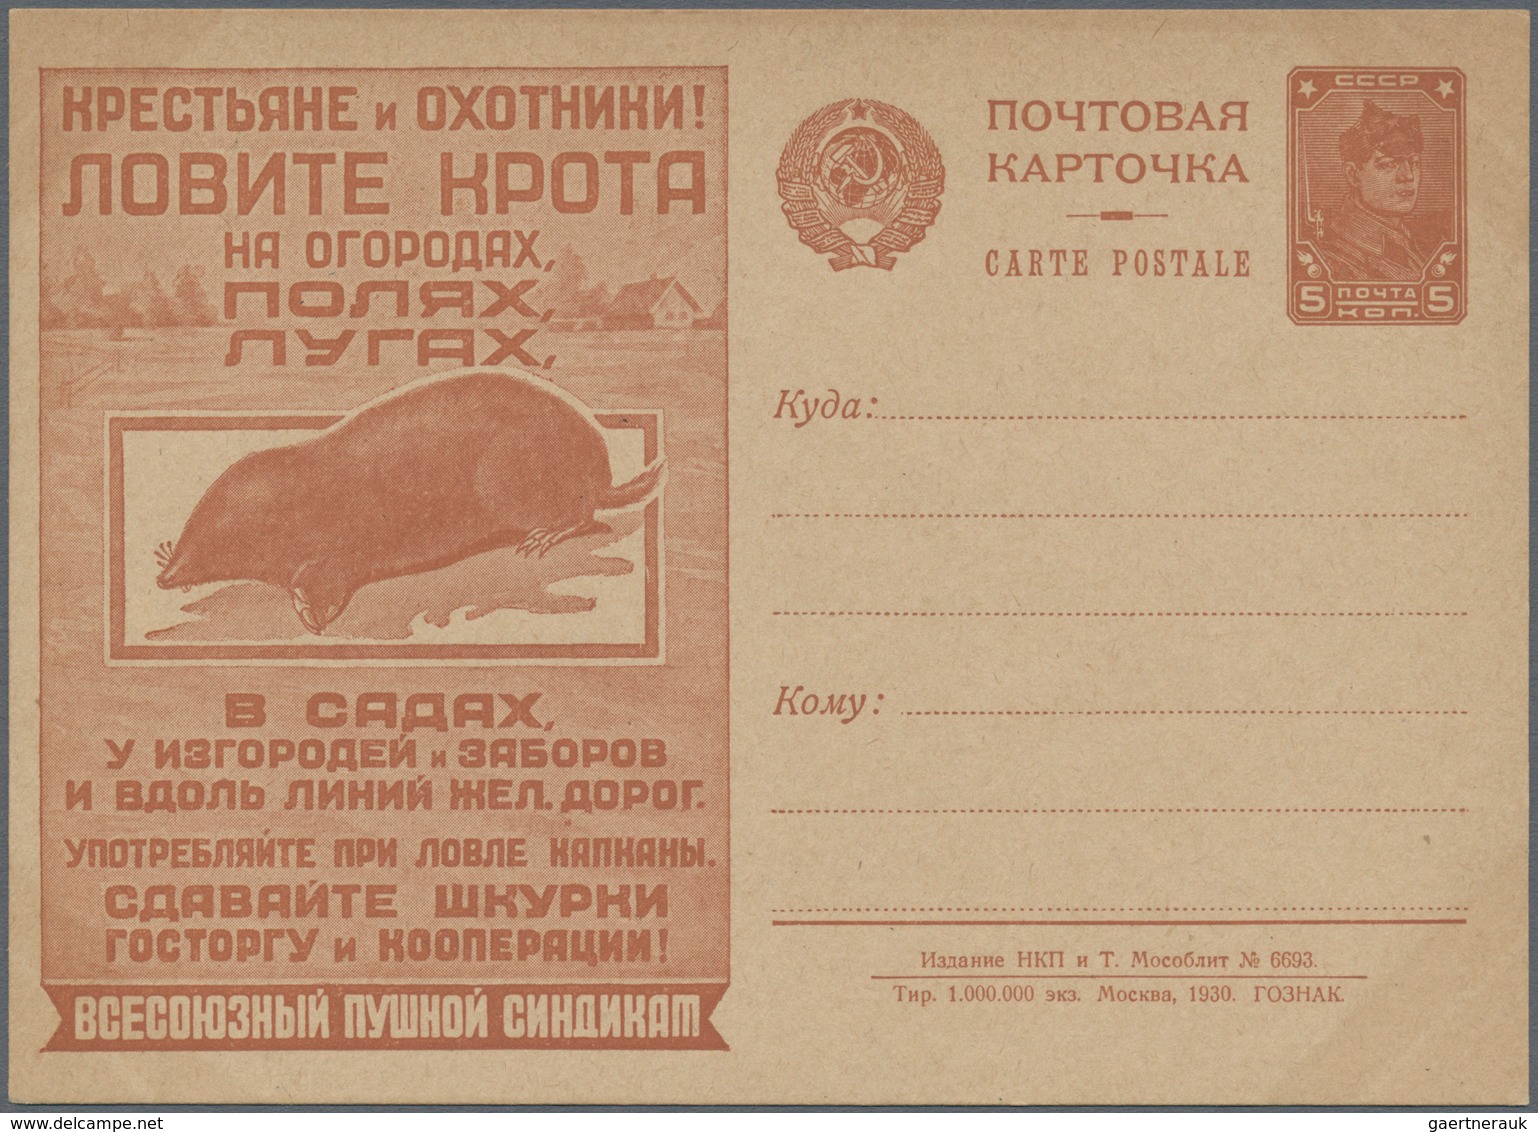 Sowjetunion - Ganzsachen: 1930, Picture Postcard Catch The Mole, Some Light Toning, Unused. - Non Classés